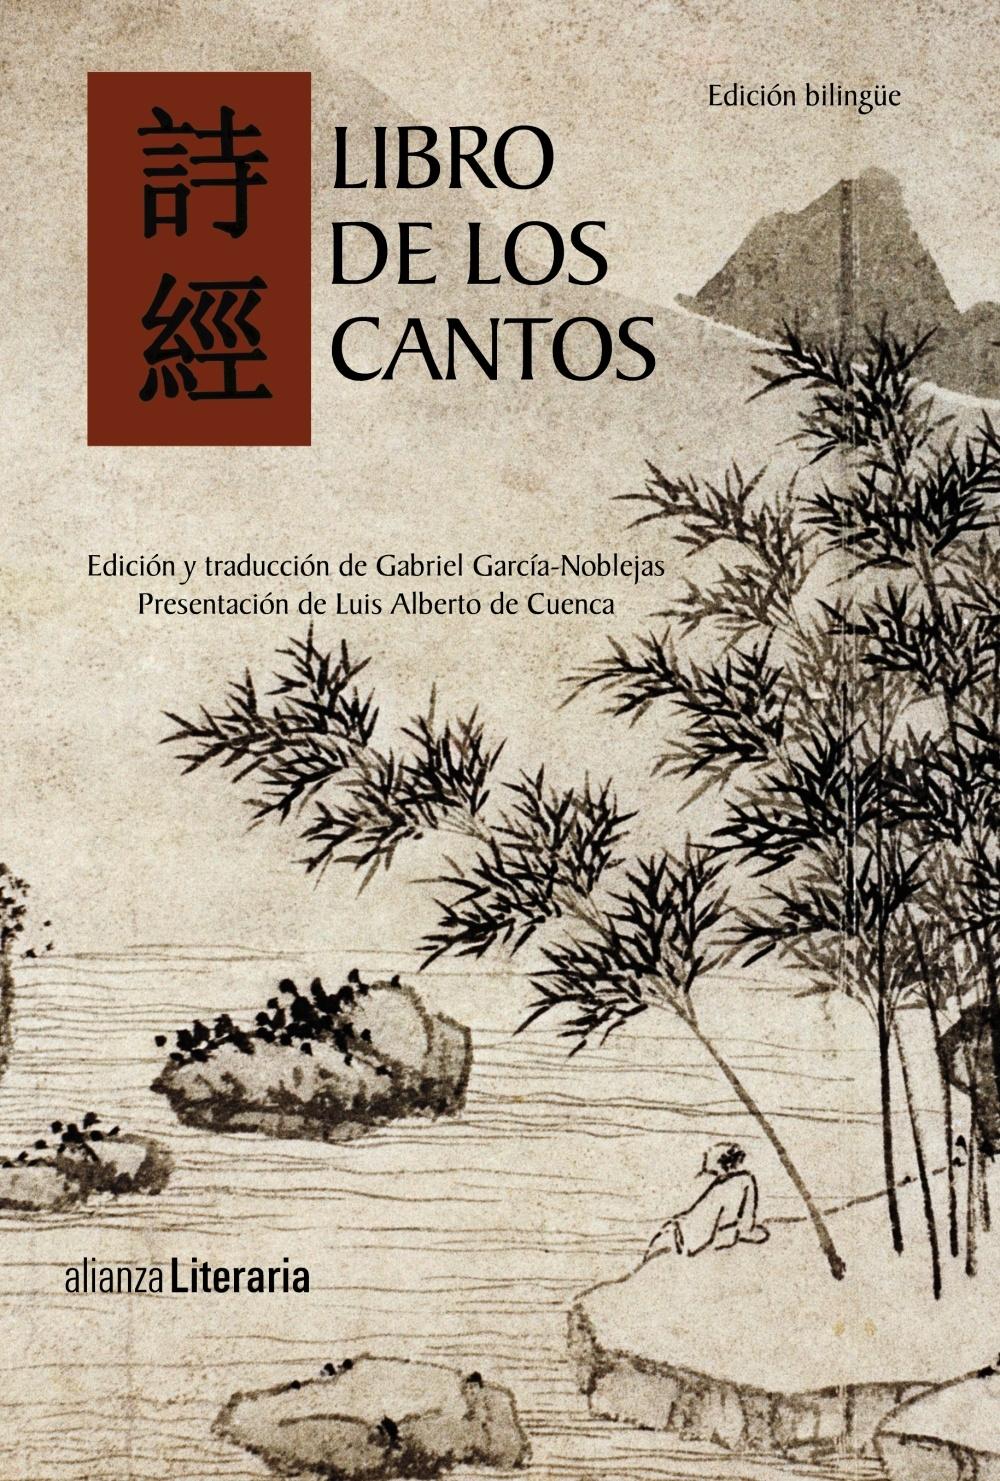 Libro de los Cantos "Edición Bilingüe". 